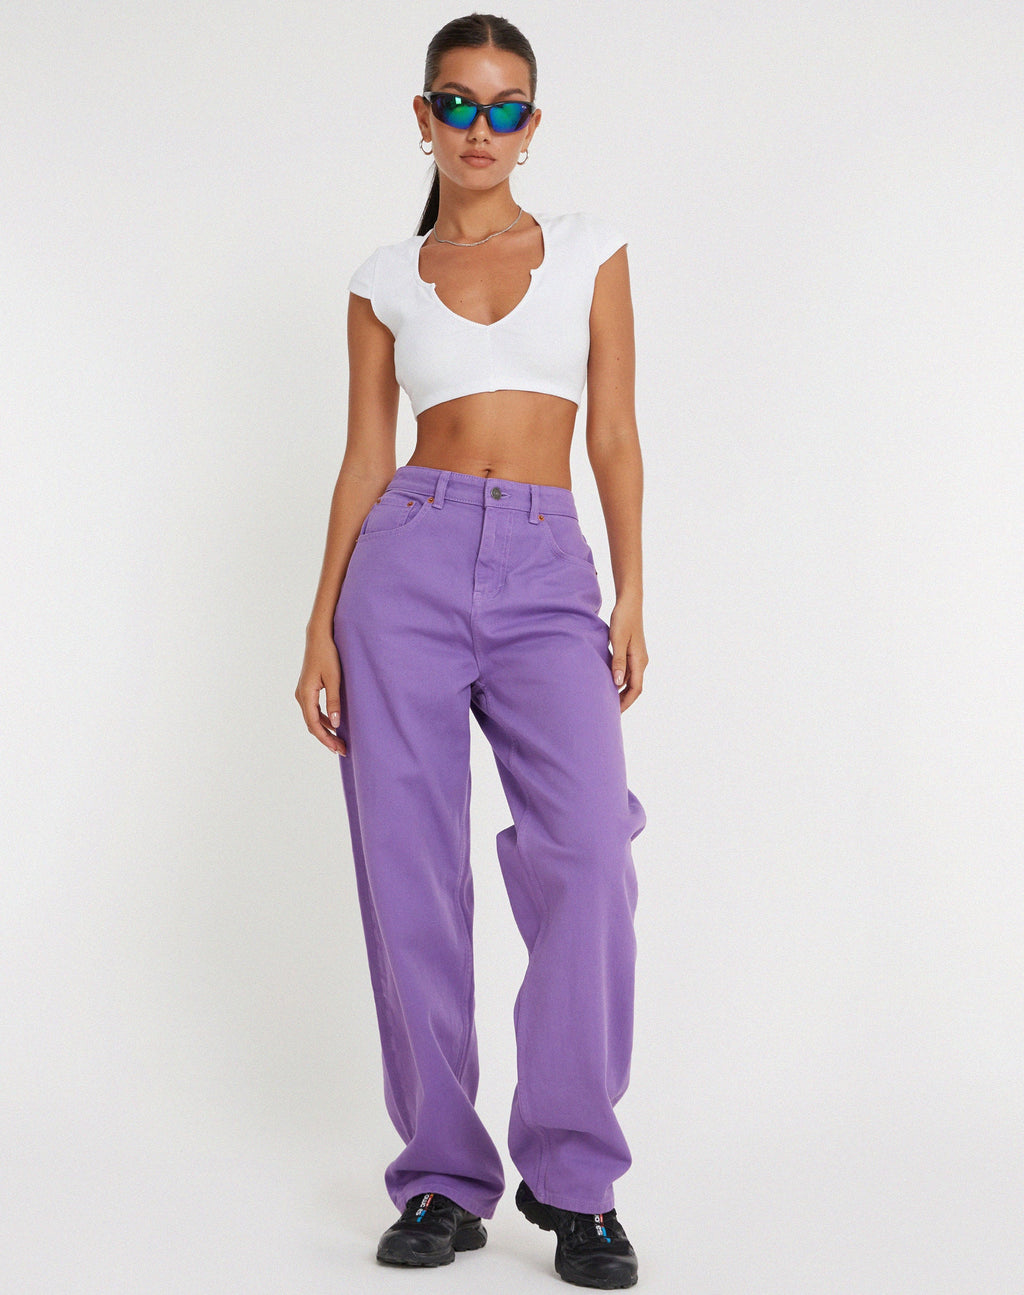 Parallel Jeans in Purple